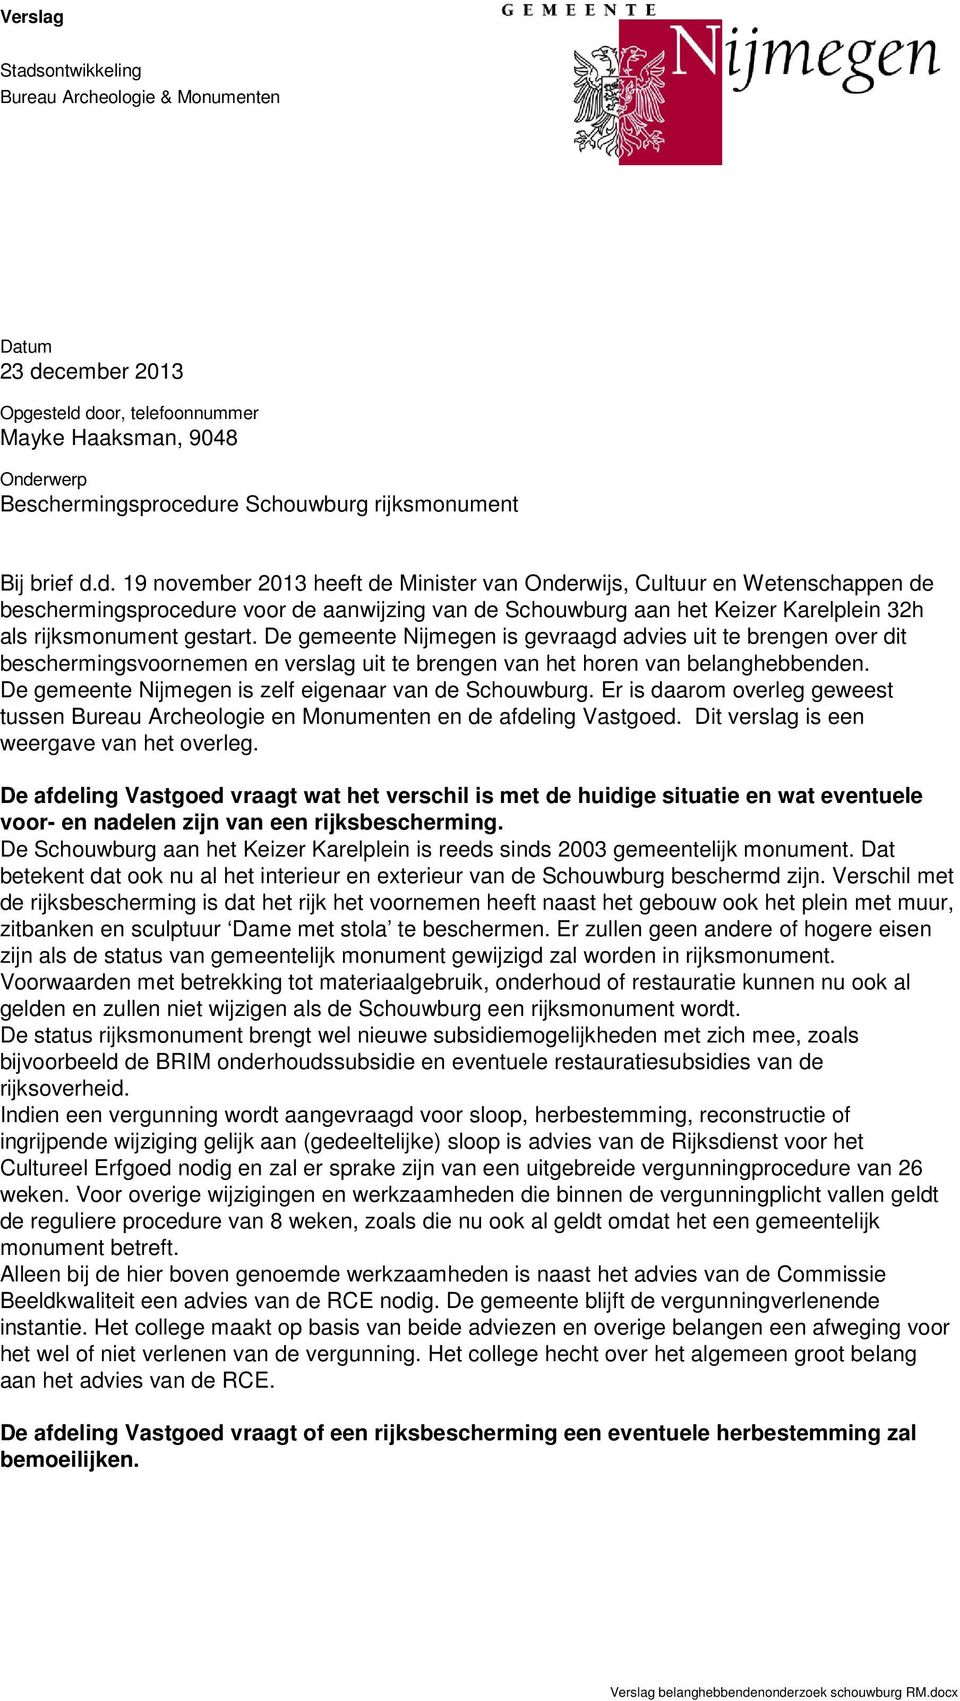 De gemeente Nijmegen is gevraagd advies uit te brengen over dit beschermingsvoornemen en verslag uit te brengen van het horen van belanghebbenden.